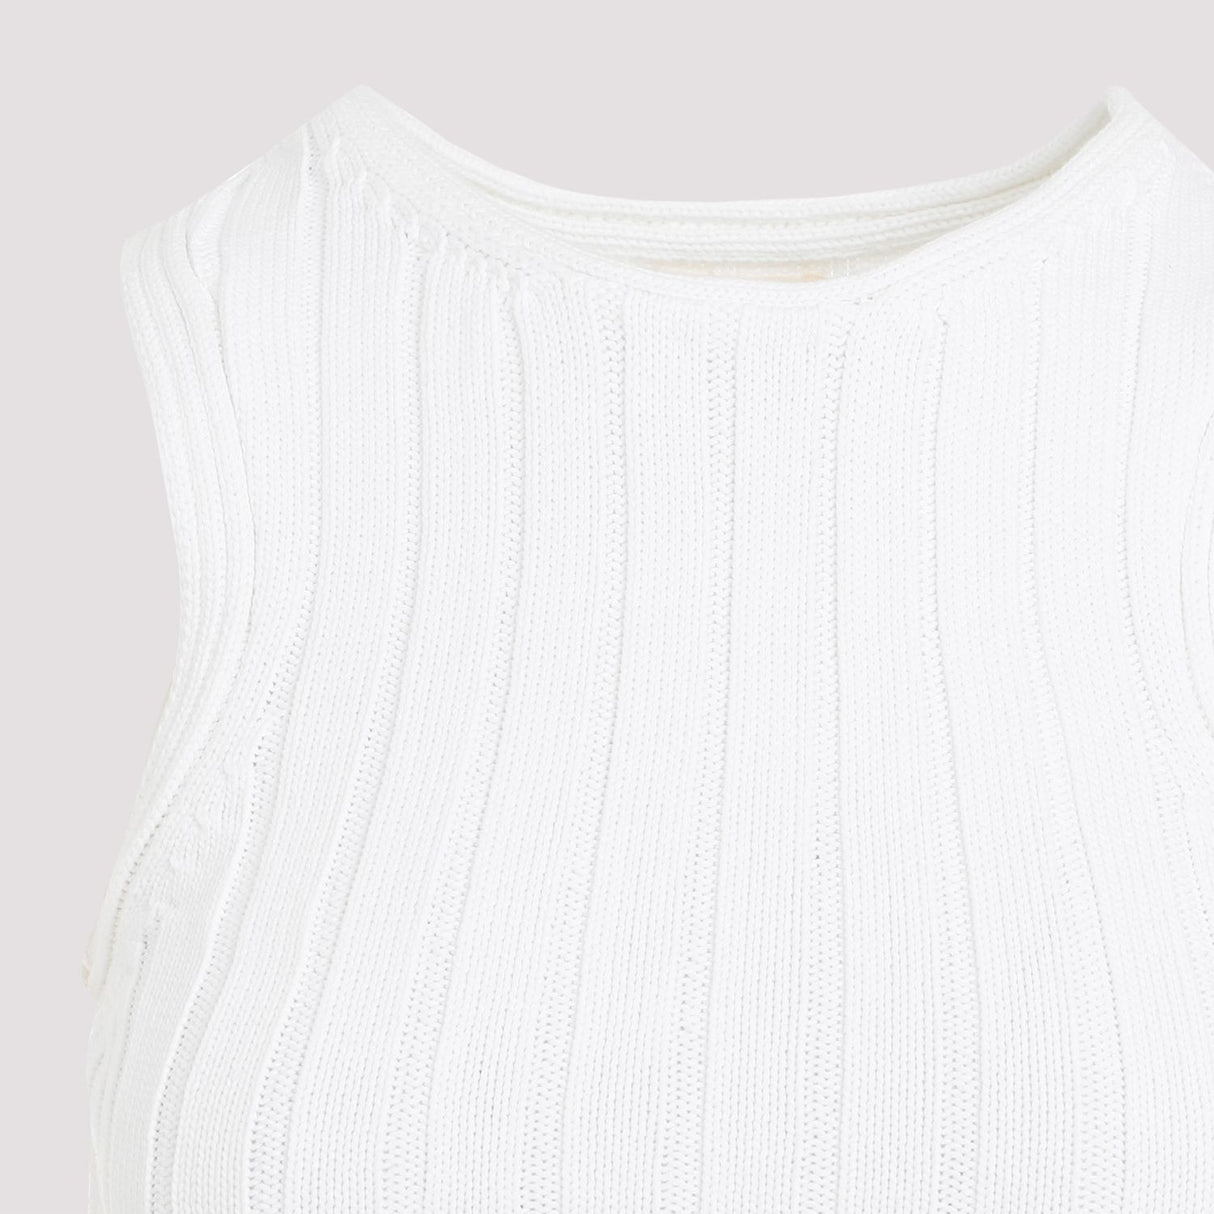 典雅白色丝绸混纺背心